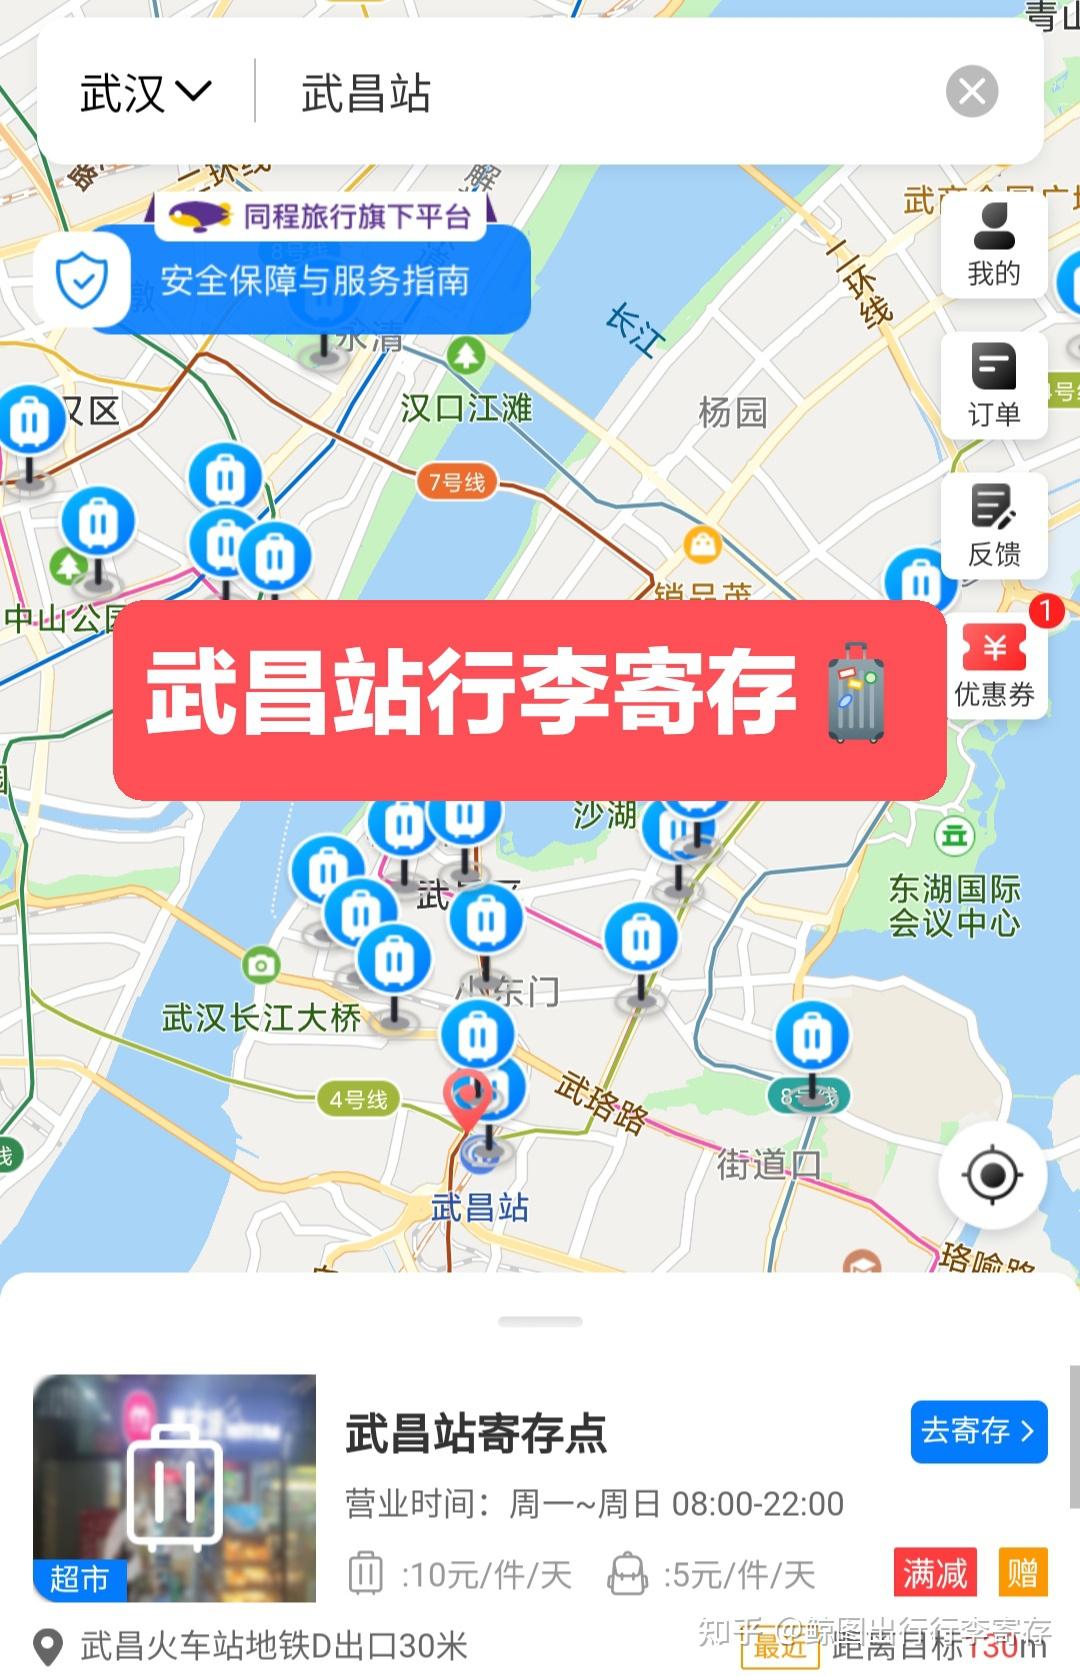 武昌火车站地图图片